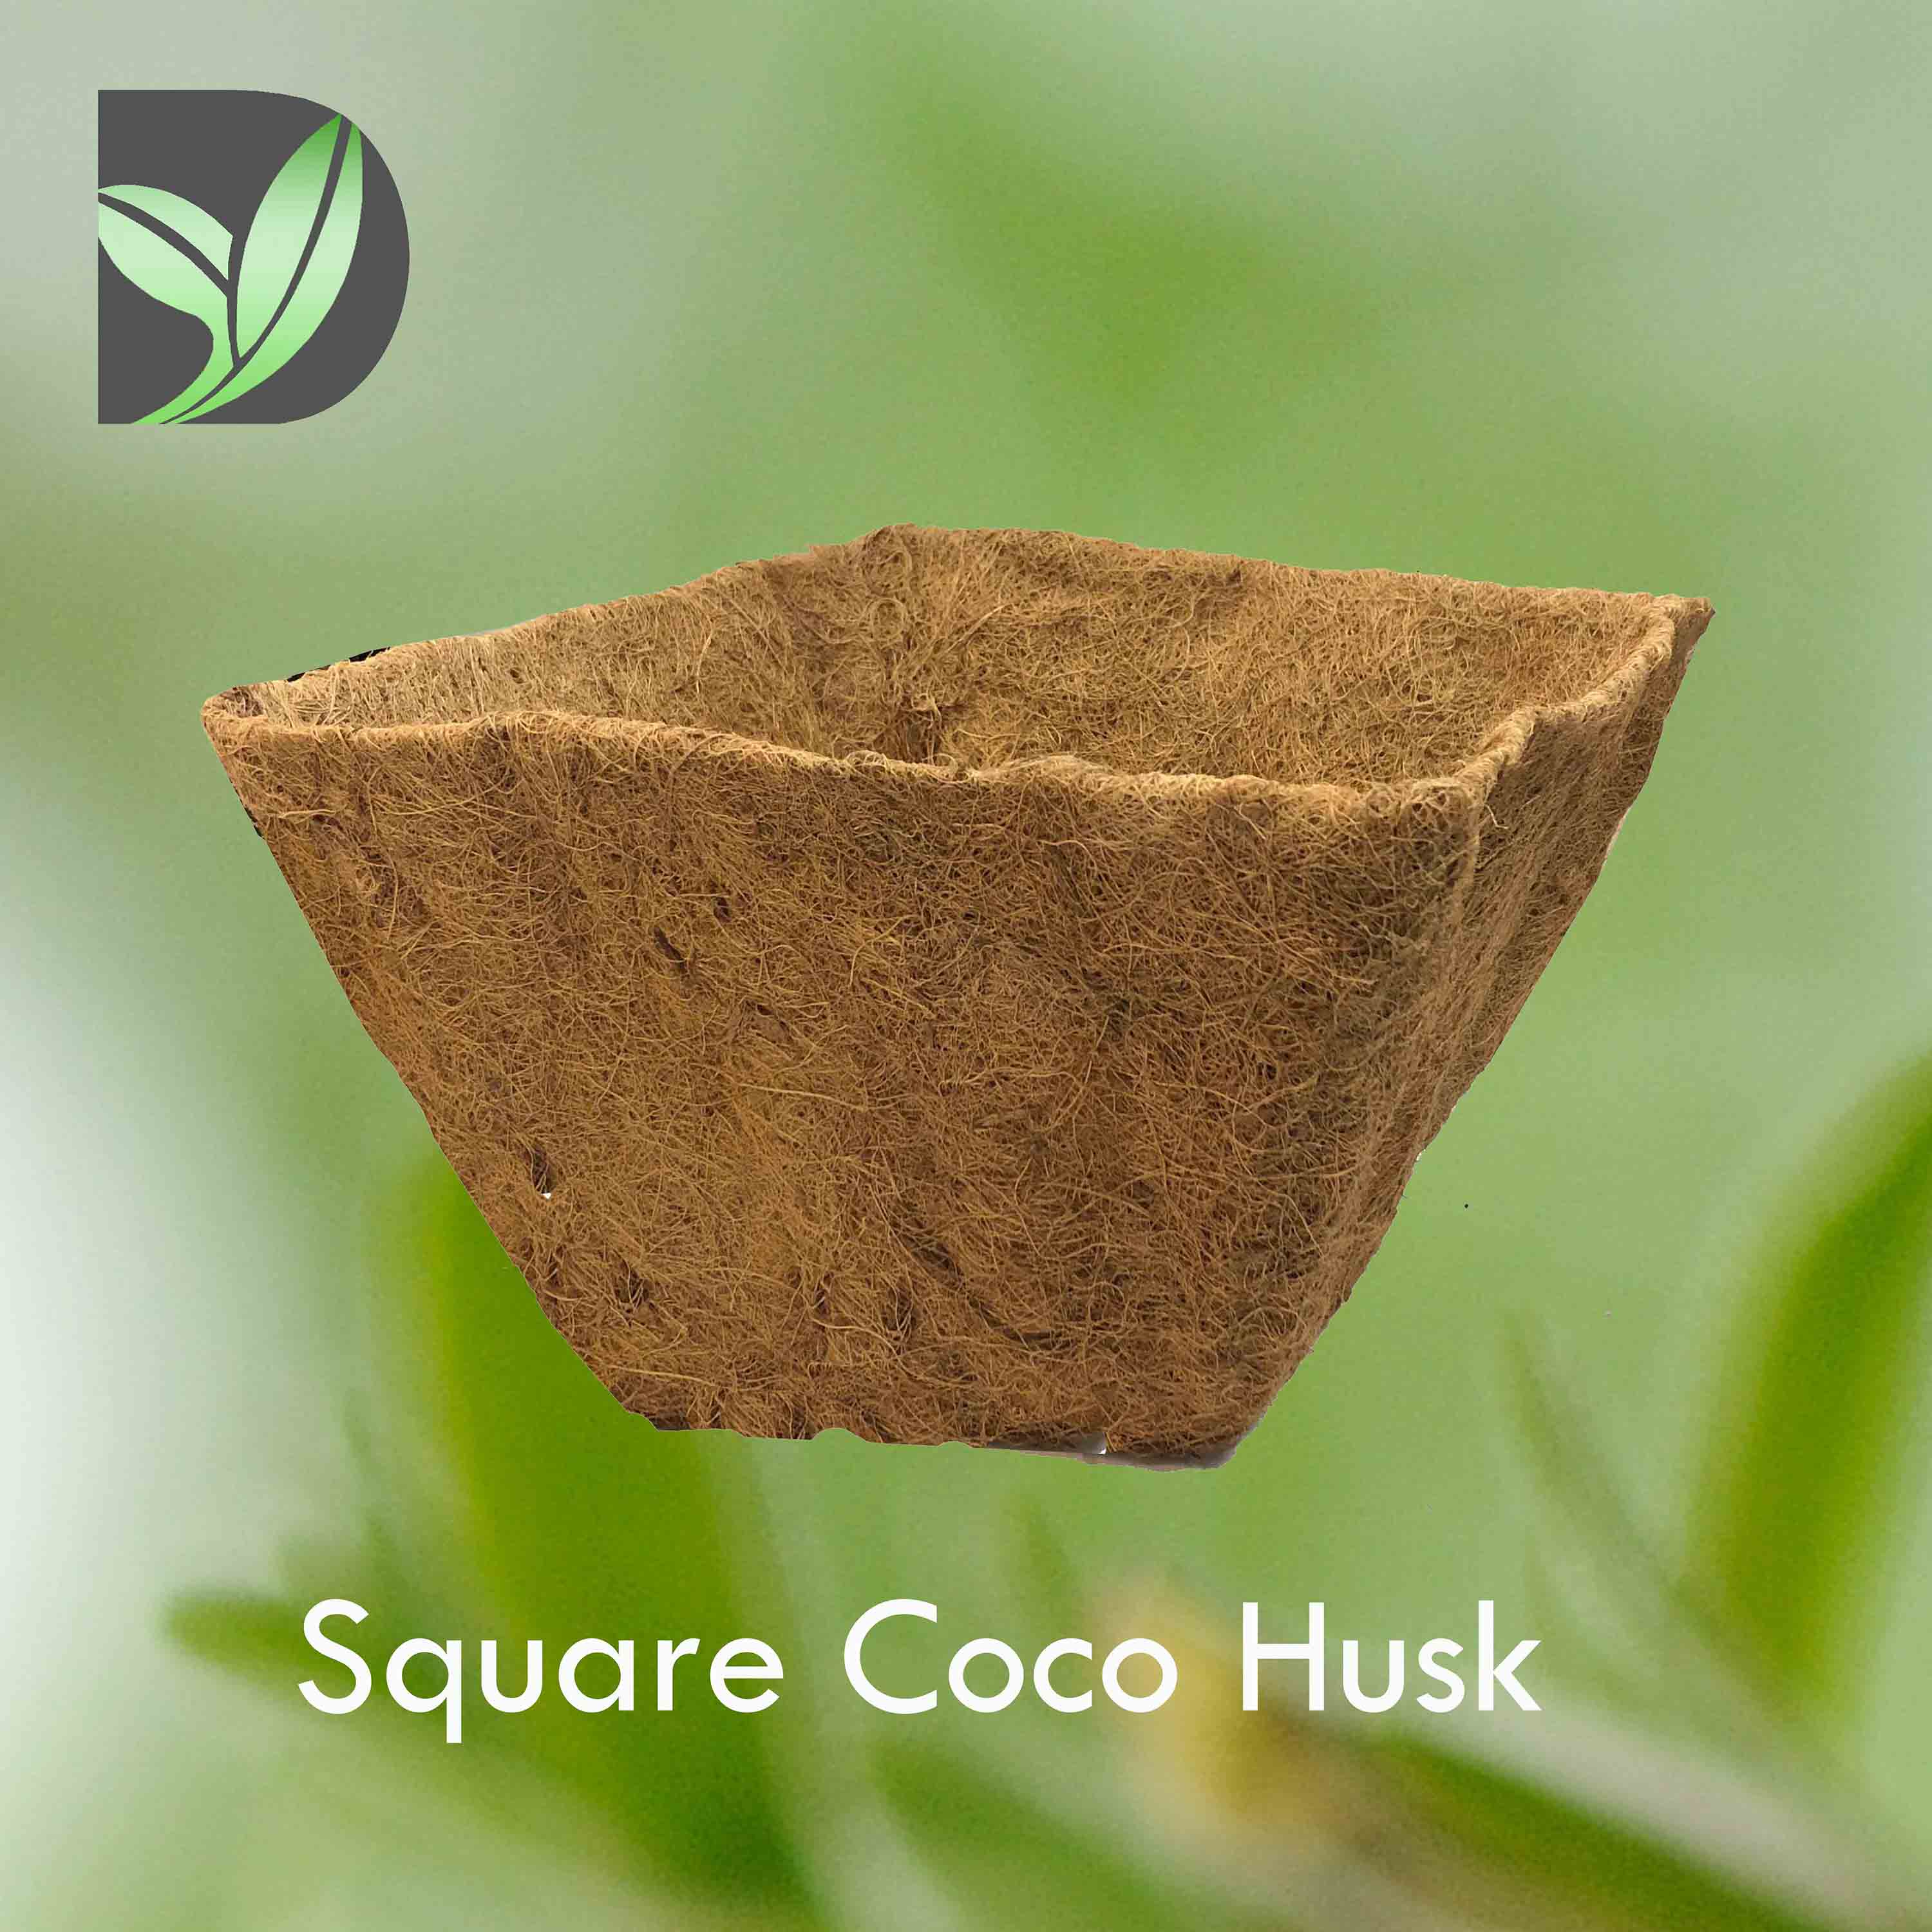 Square Coco Husk